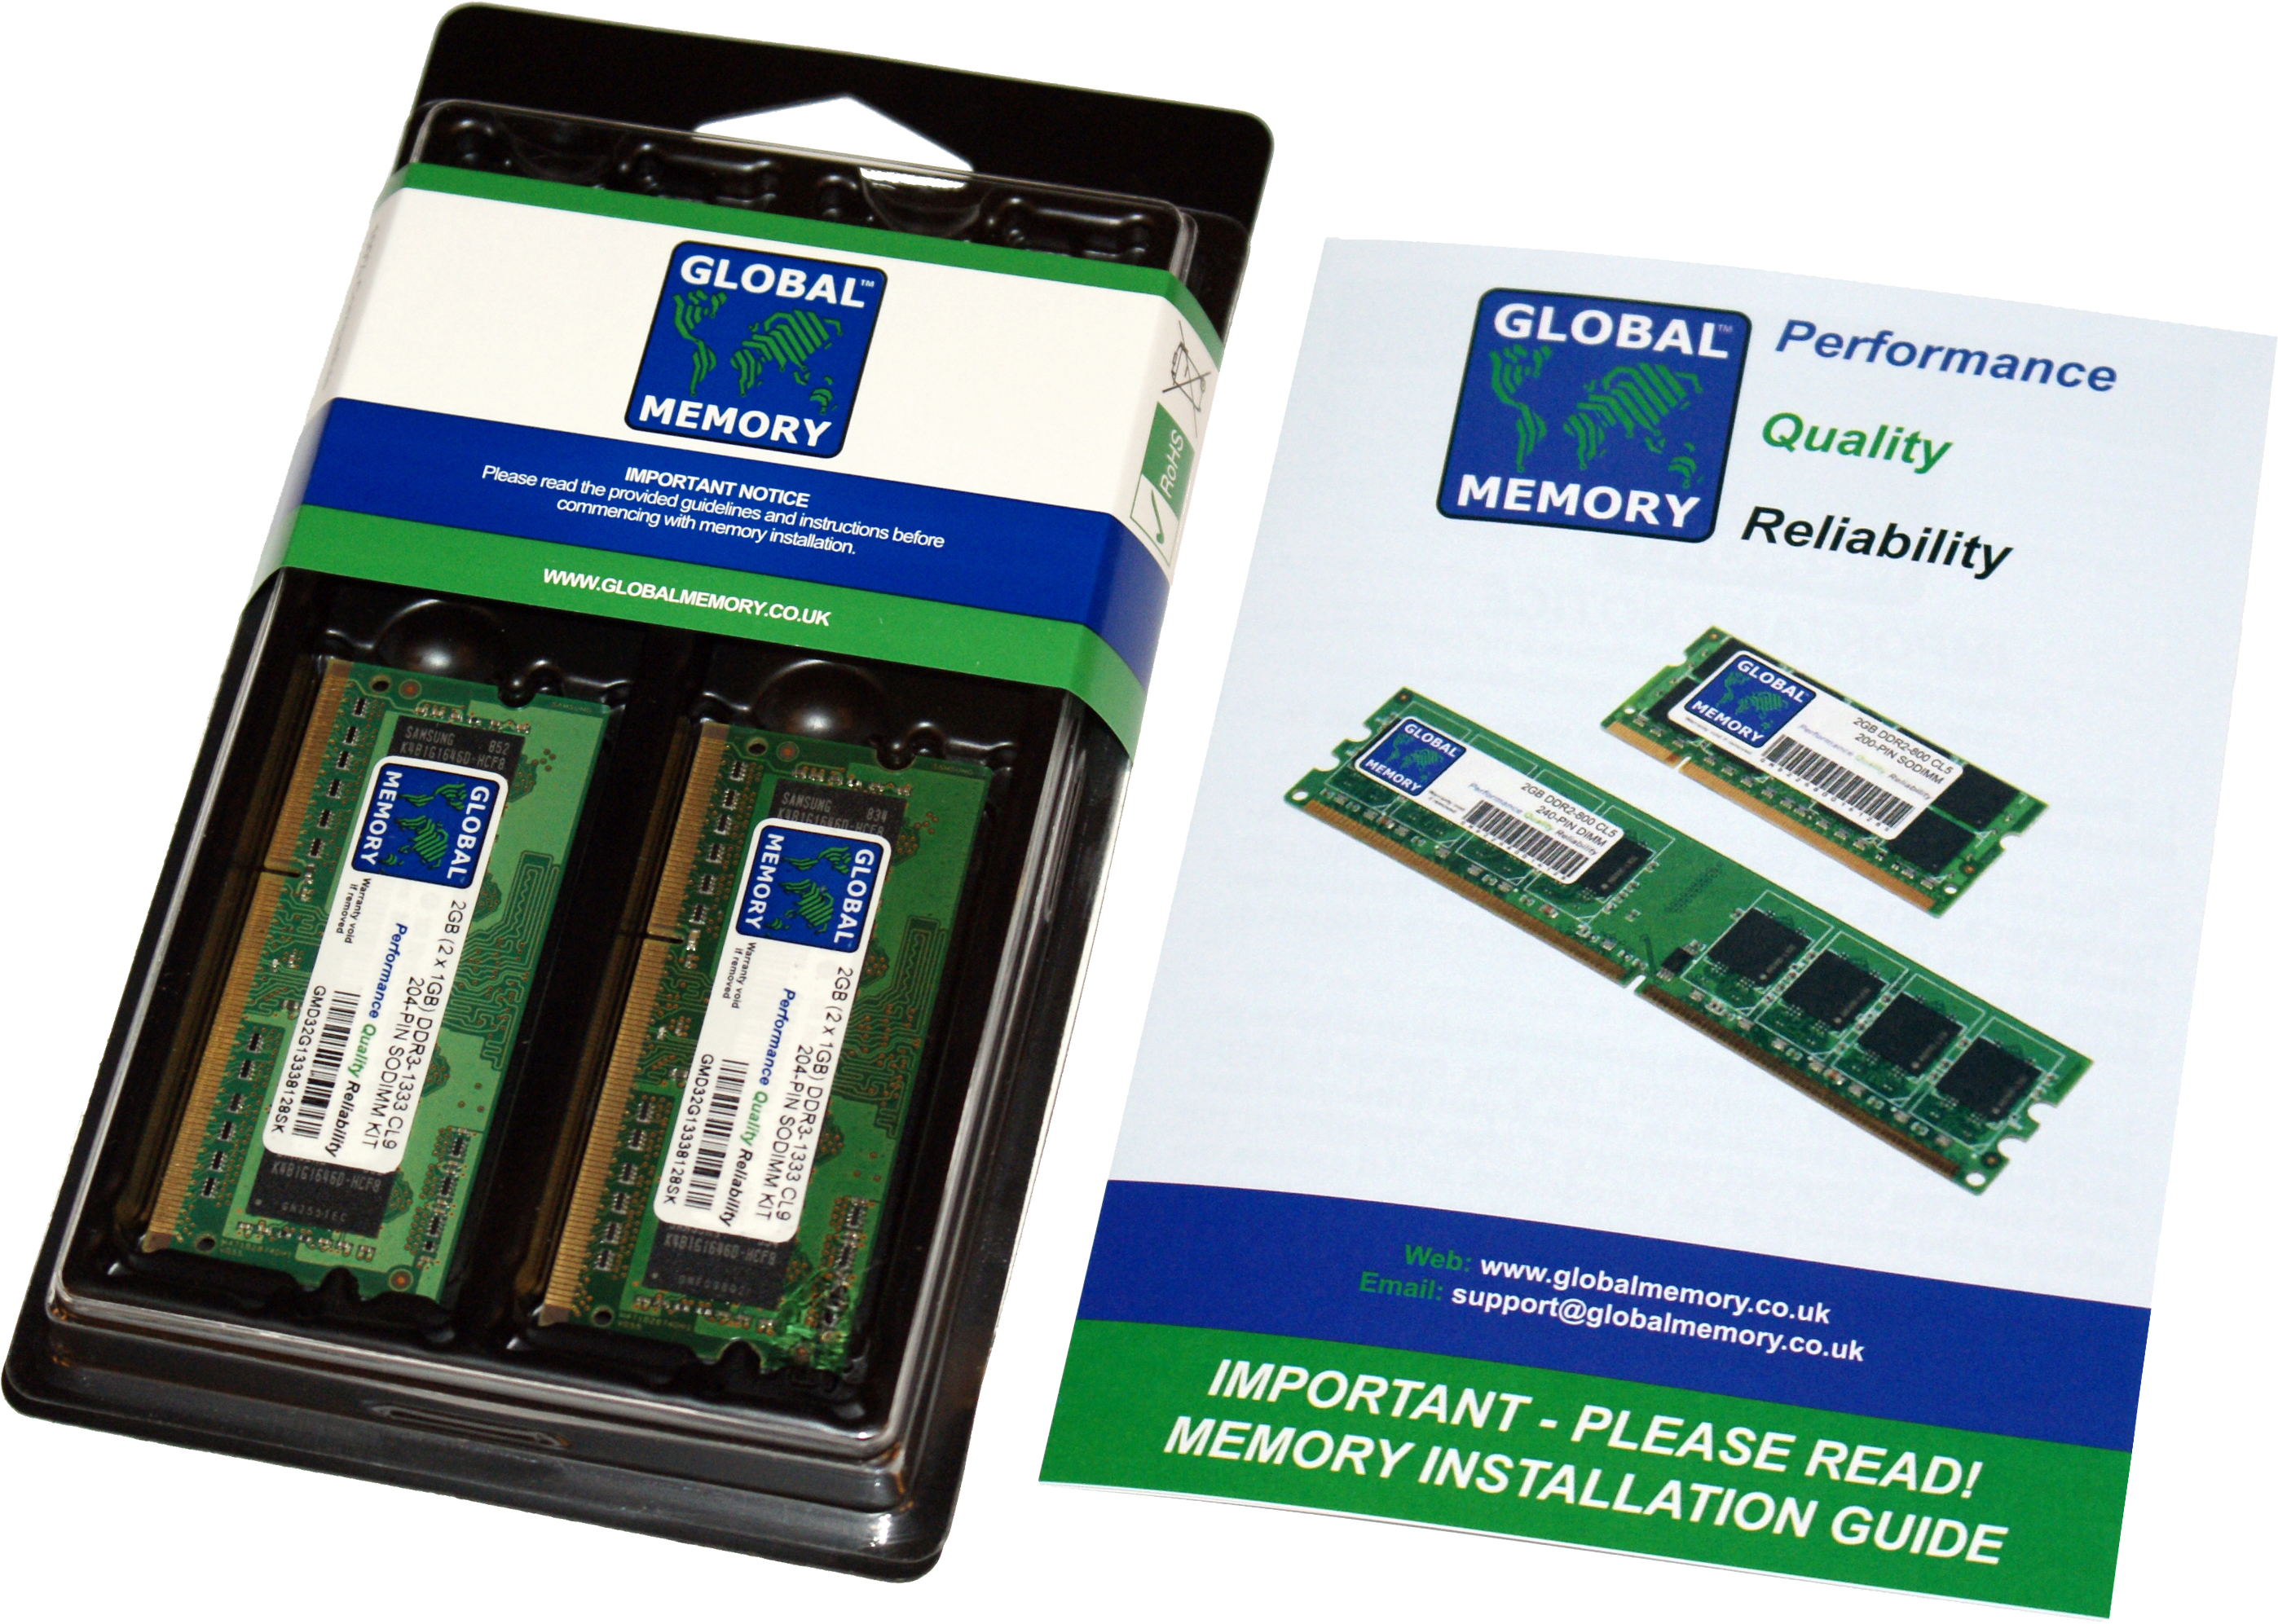 8GB (2 x 4GB) DDR4 2400MHz PC4-19200 260-PIN SODIMM MEMORY RAM KIT FOR FUJITSU LAPTOPS/NOTEBOOKS